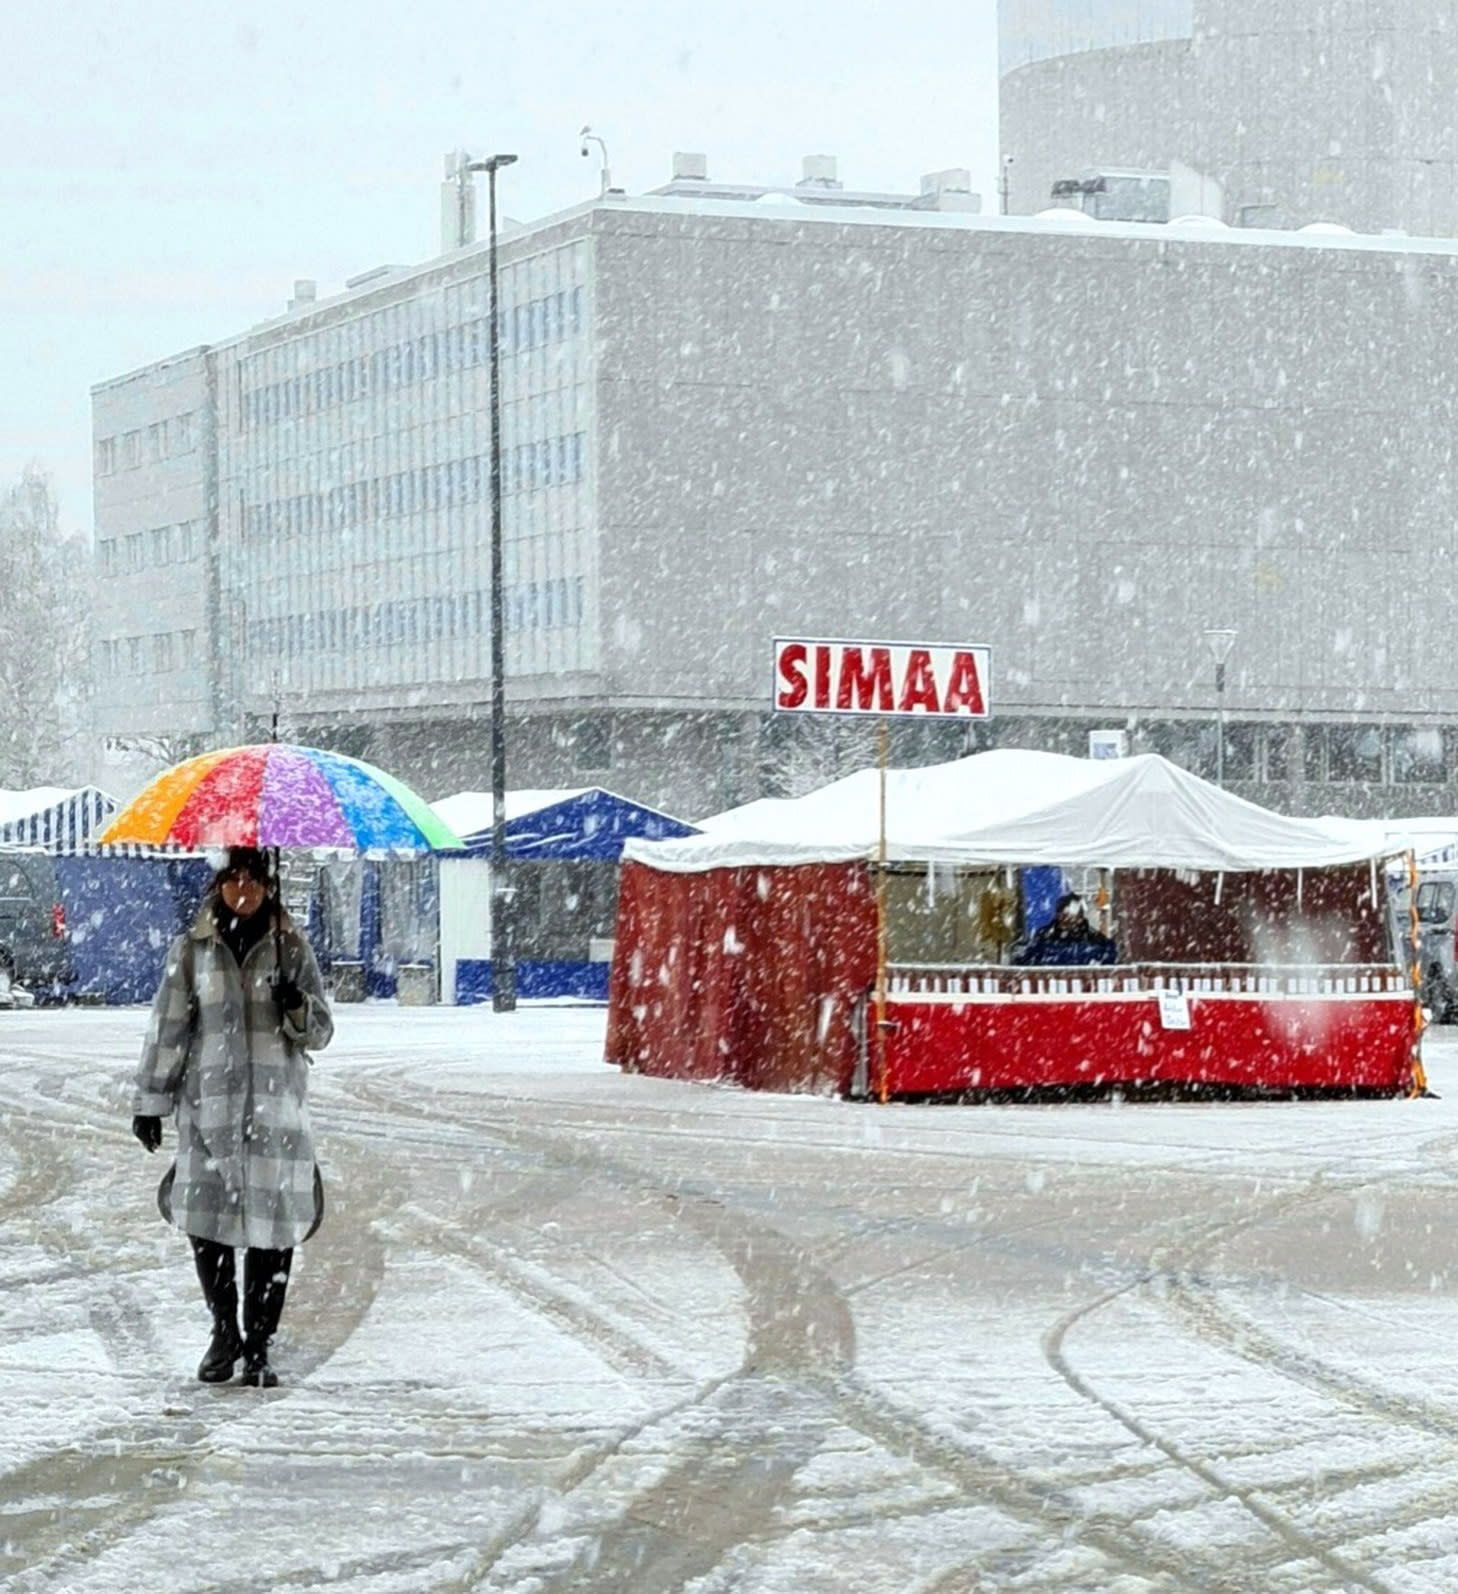 Finnland bereitet sich darauf vor, den XNUMX. Mai traditionell bei Graupel und Schnee zu feiern